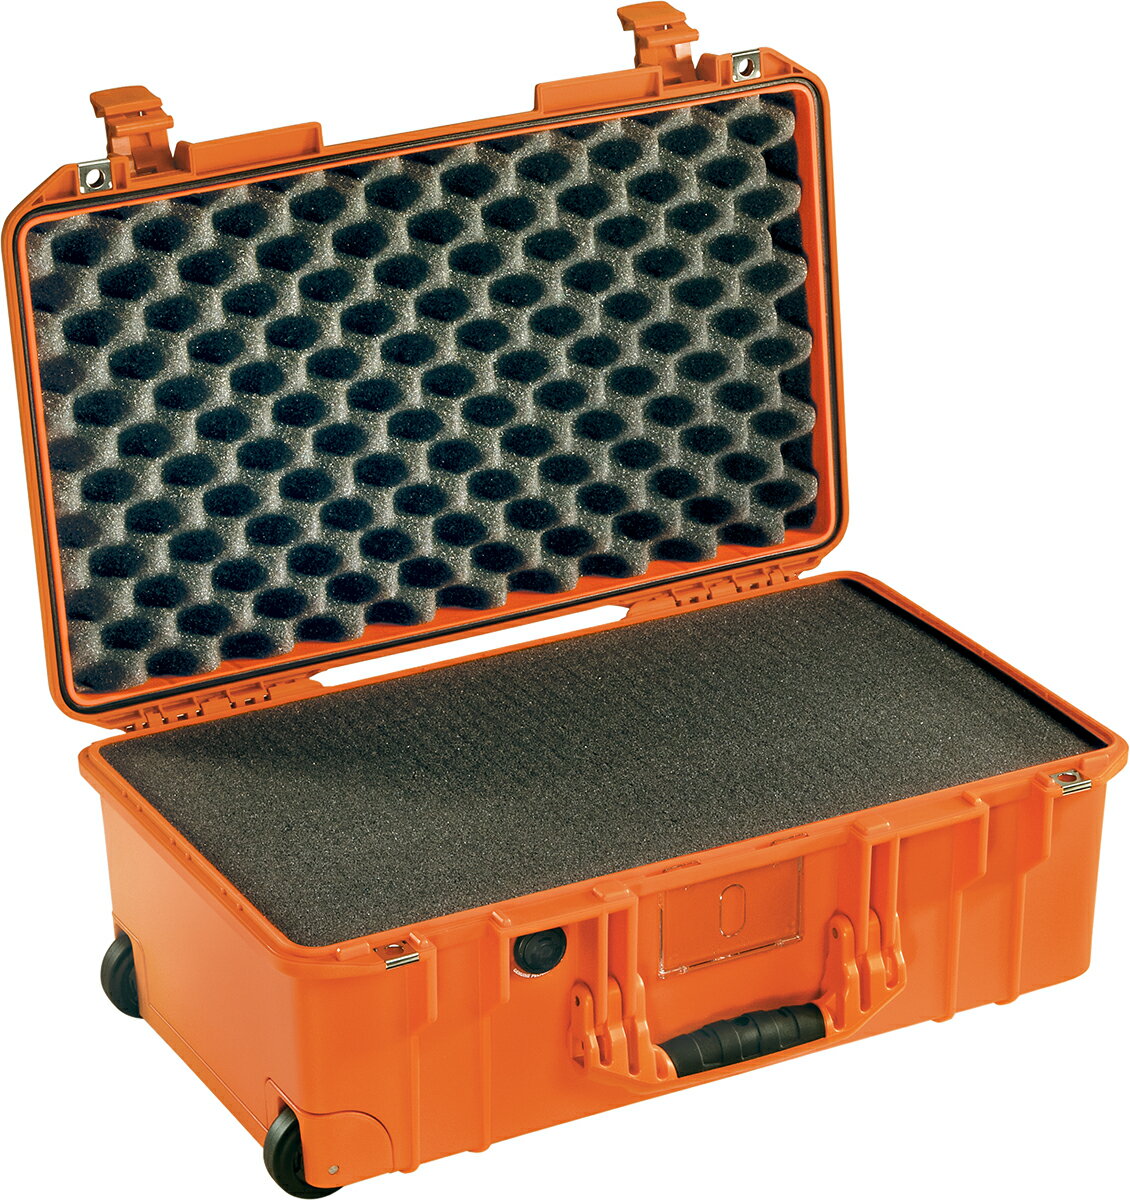 PELICAN (ペリカン) エアキャリーオンケース 1535 エアケース フォーム付 ORANGE [オレンジ] [015350-0001-150] キャスター付き ハードケース 防水性・耐衝撃性・防塵性 保護ケース カメラ用品 機内持ち込みサイズ 収納可能な延長ハンドル